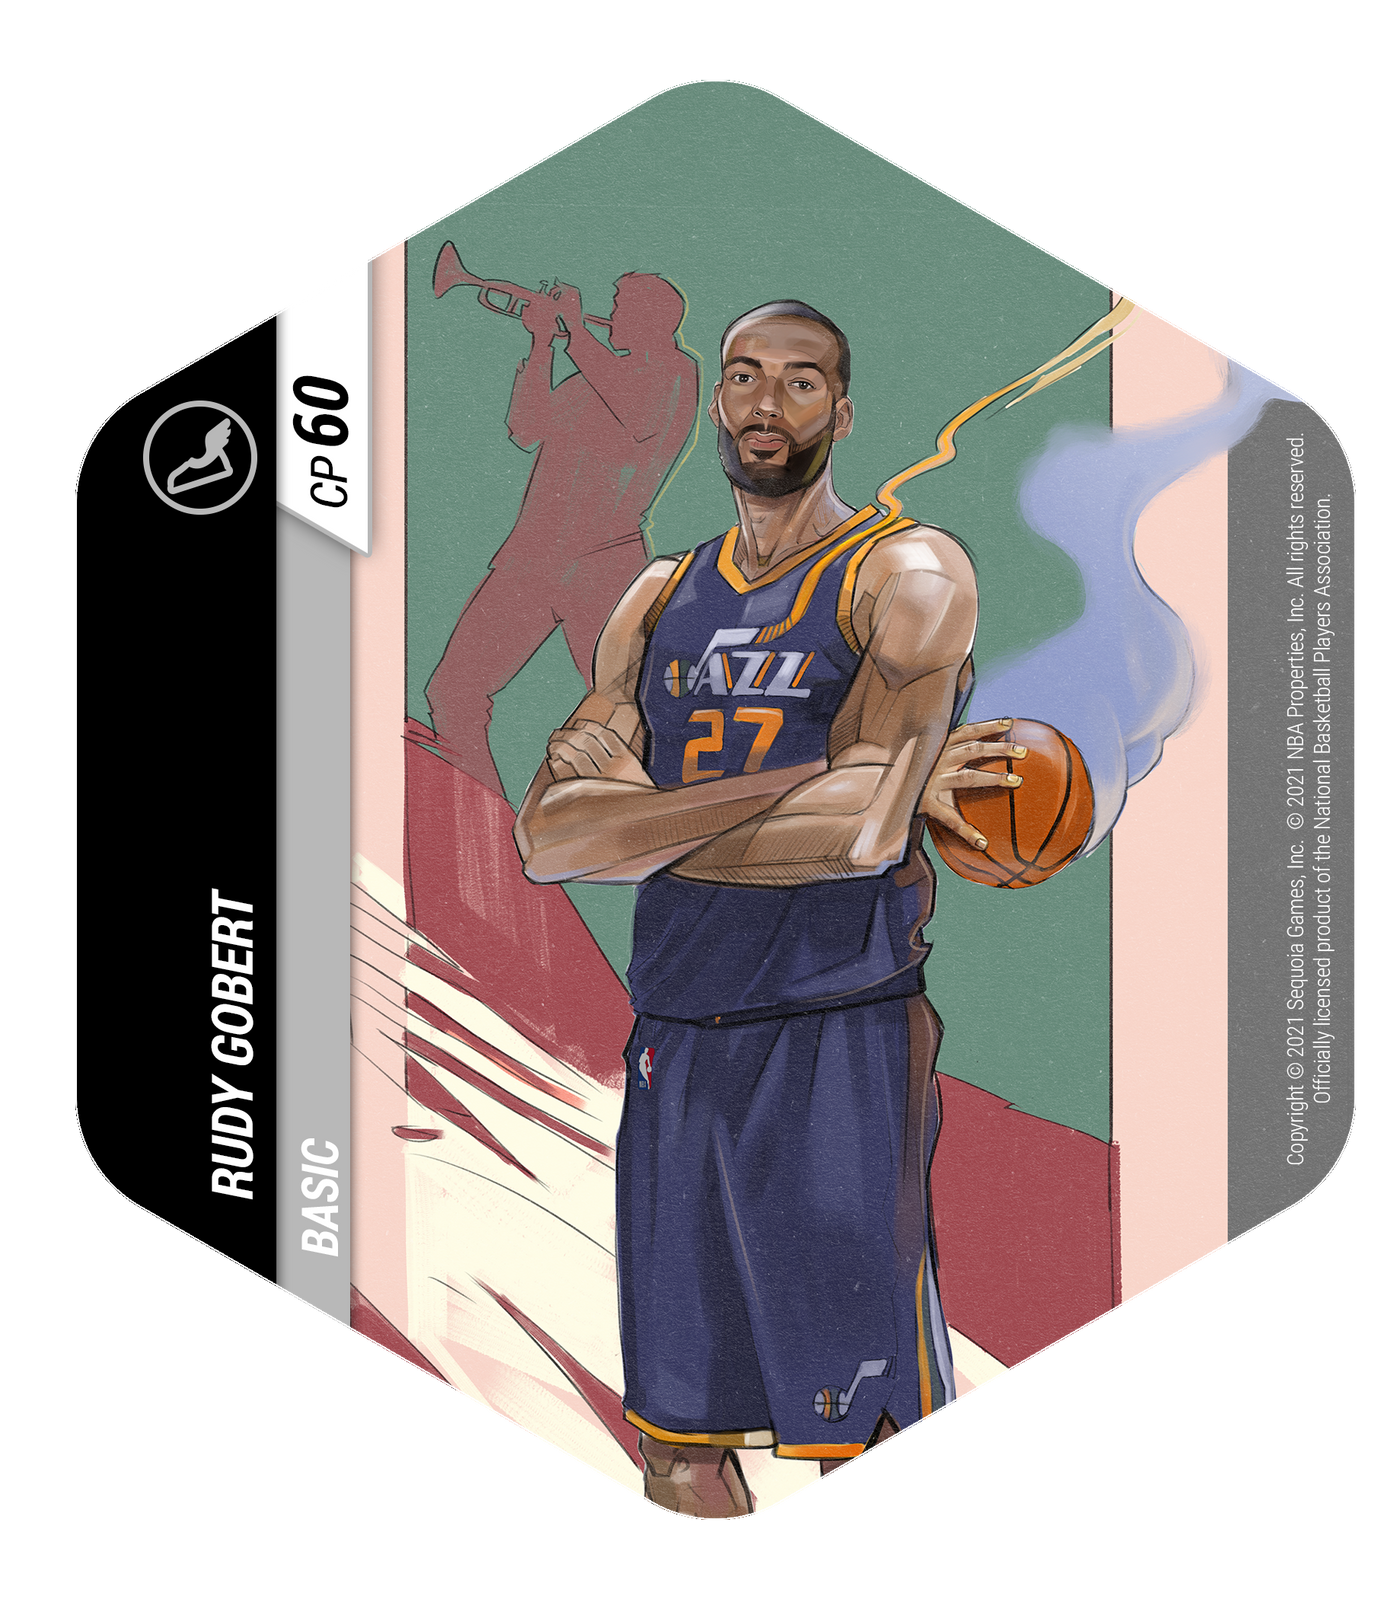 Flex NBA Utah Jazz 1-Player Starter Set